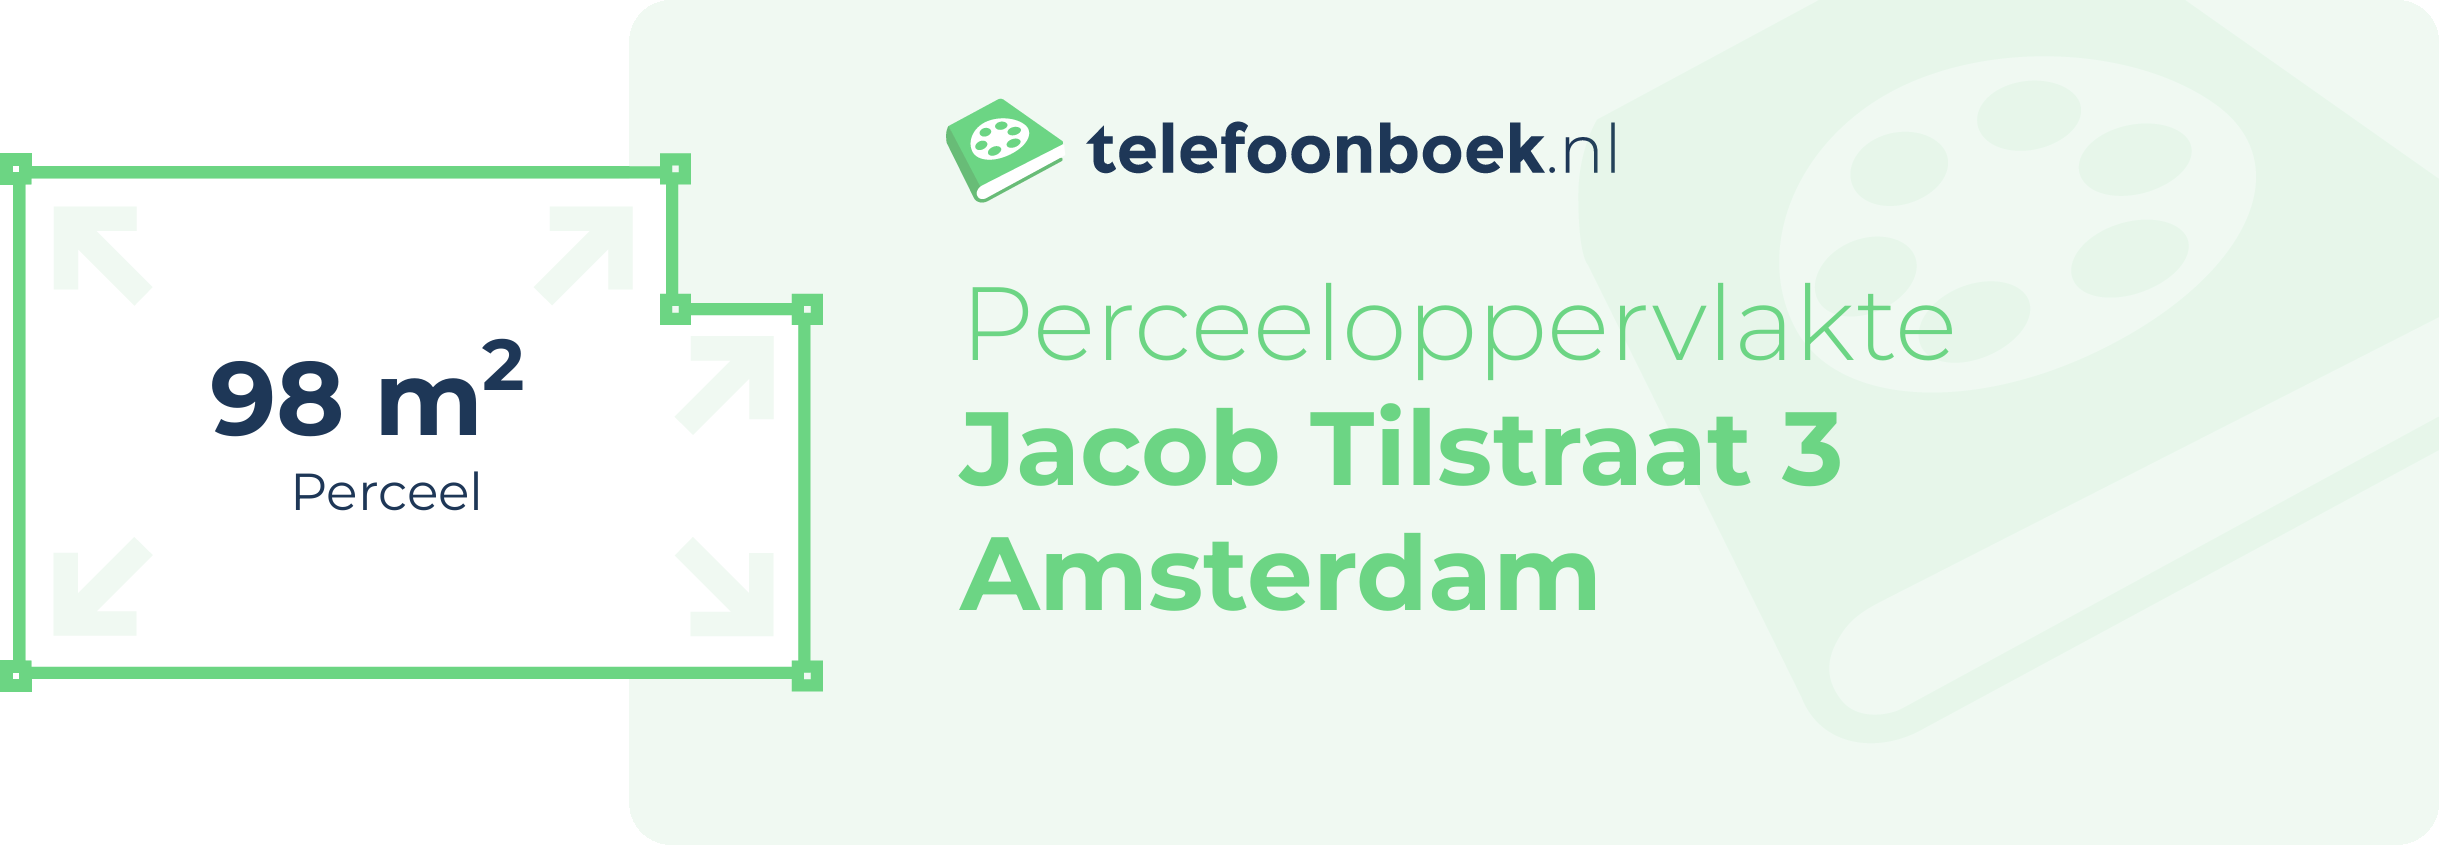 Perceeloppervlakte Jacob Tilstraat 3 Amsterdam